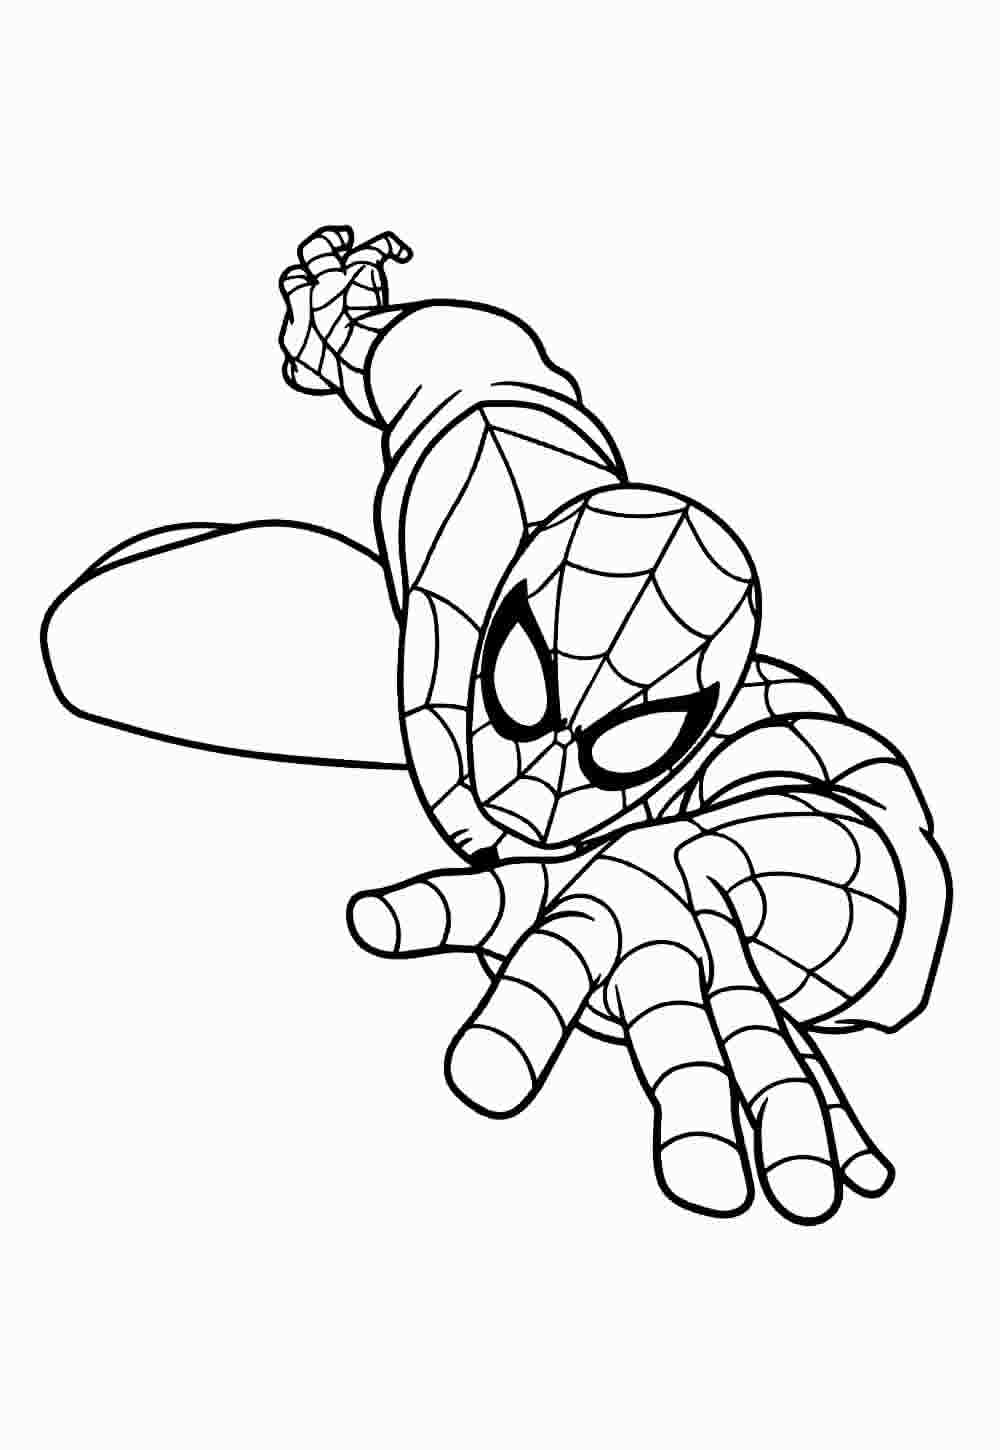 Desenho do Homem-Aranha